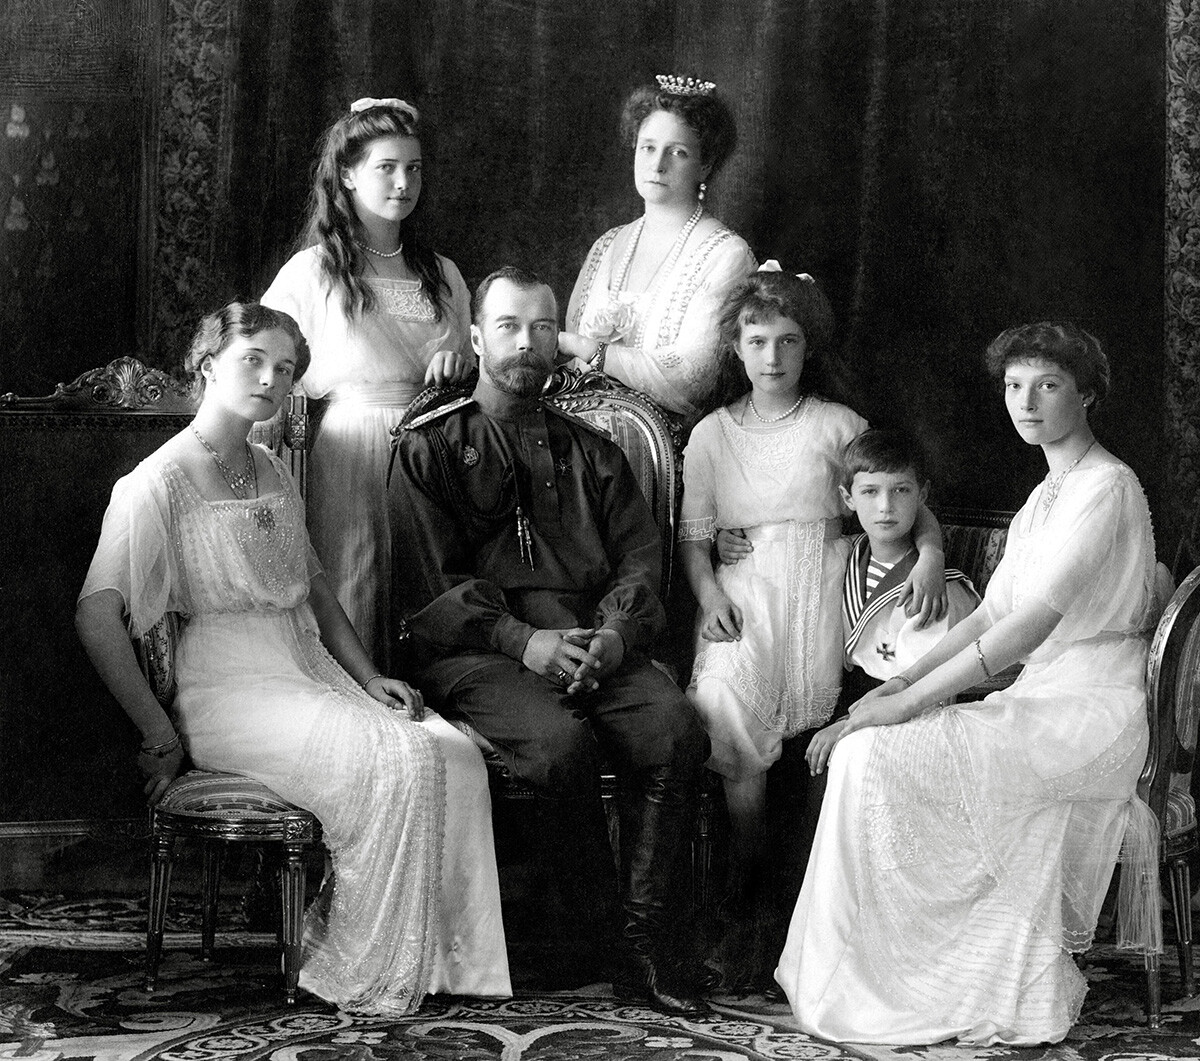 ニコライ2世と家族。左側から娘のオリガ、マリア、ニコライ2世、アレクサンドラ・フョードロヴナ、娘のアナスタシア、息子のアレクセイ、娘のタチアナ。リヴァディア、1913年。